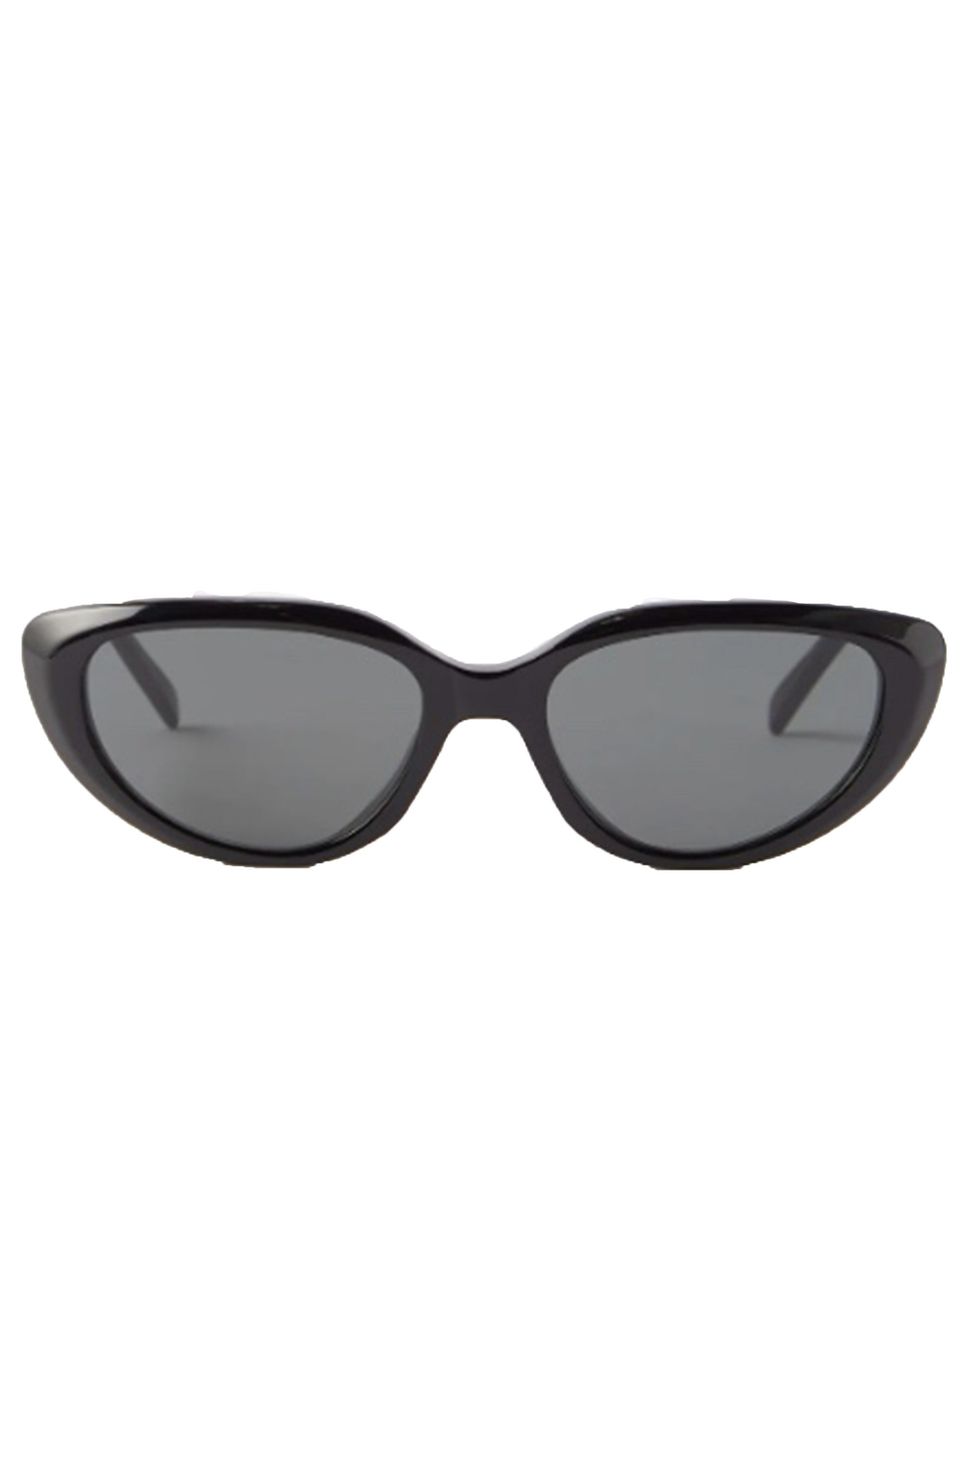 Celine cat-eye sunglasses